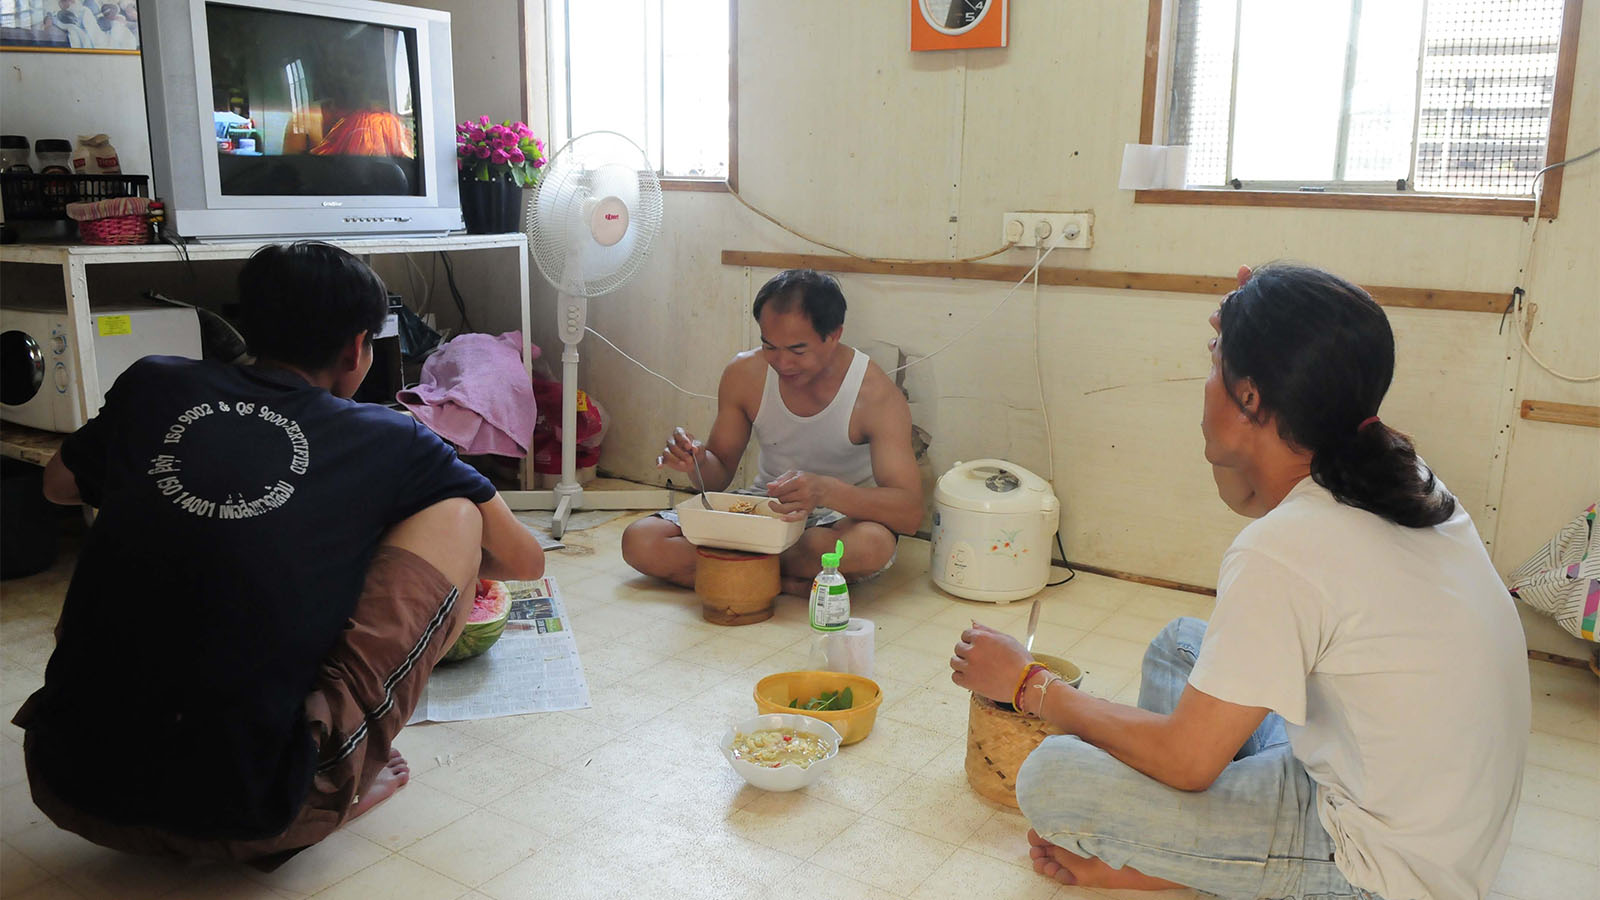 עובדים תאילנדים ממושב היוגב. למצולמים אין קשר לכתבה (צילום: תומר ניוברג/ פלאש 90)